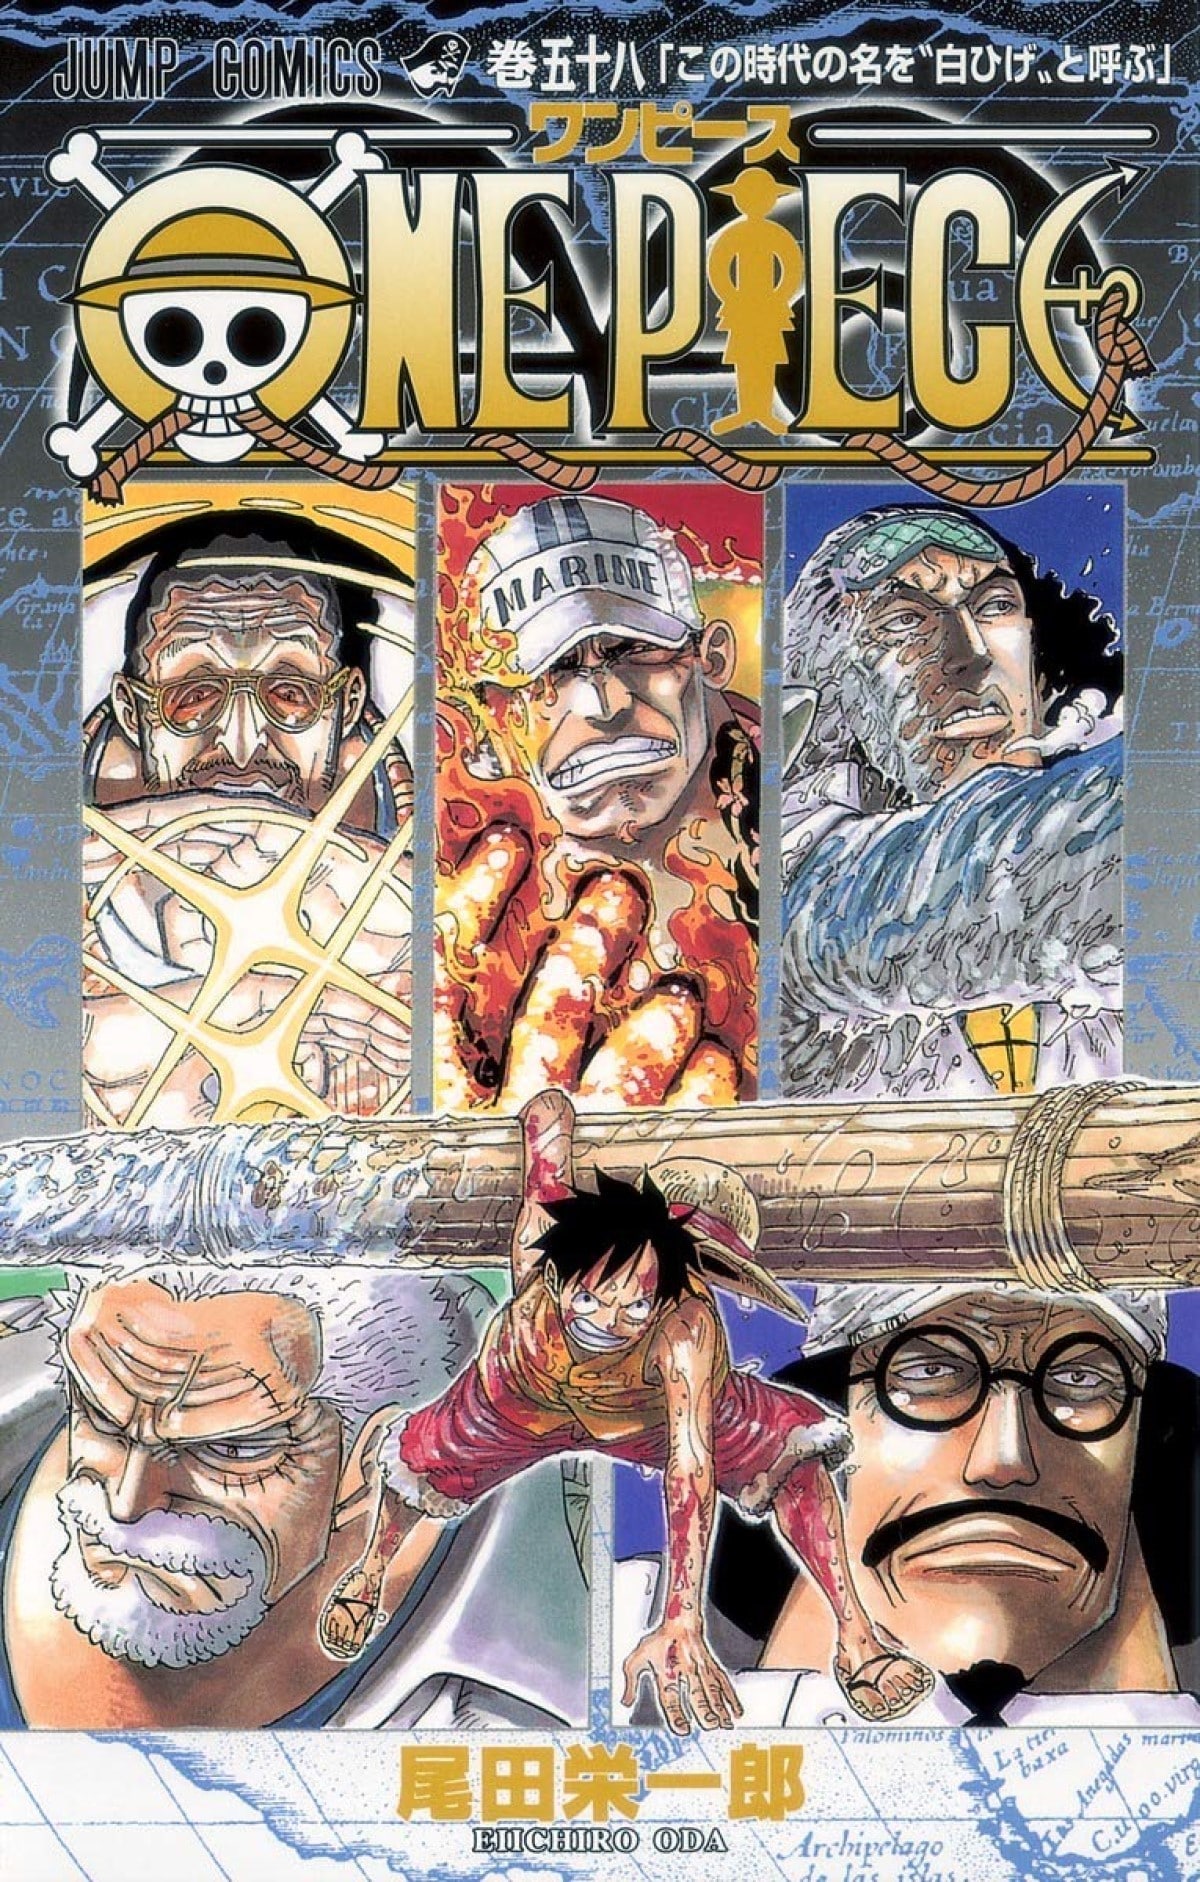 ファンが選んだ One Piece で好きなシリーズランキング すべての始まり 東の海編 を抑えた1位は All About News